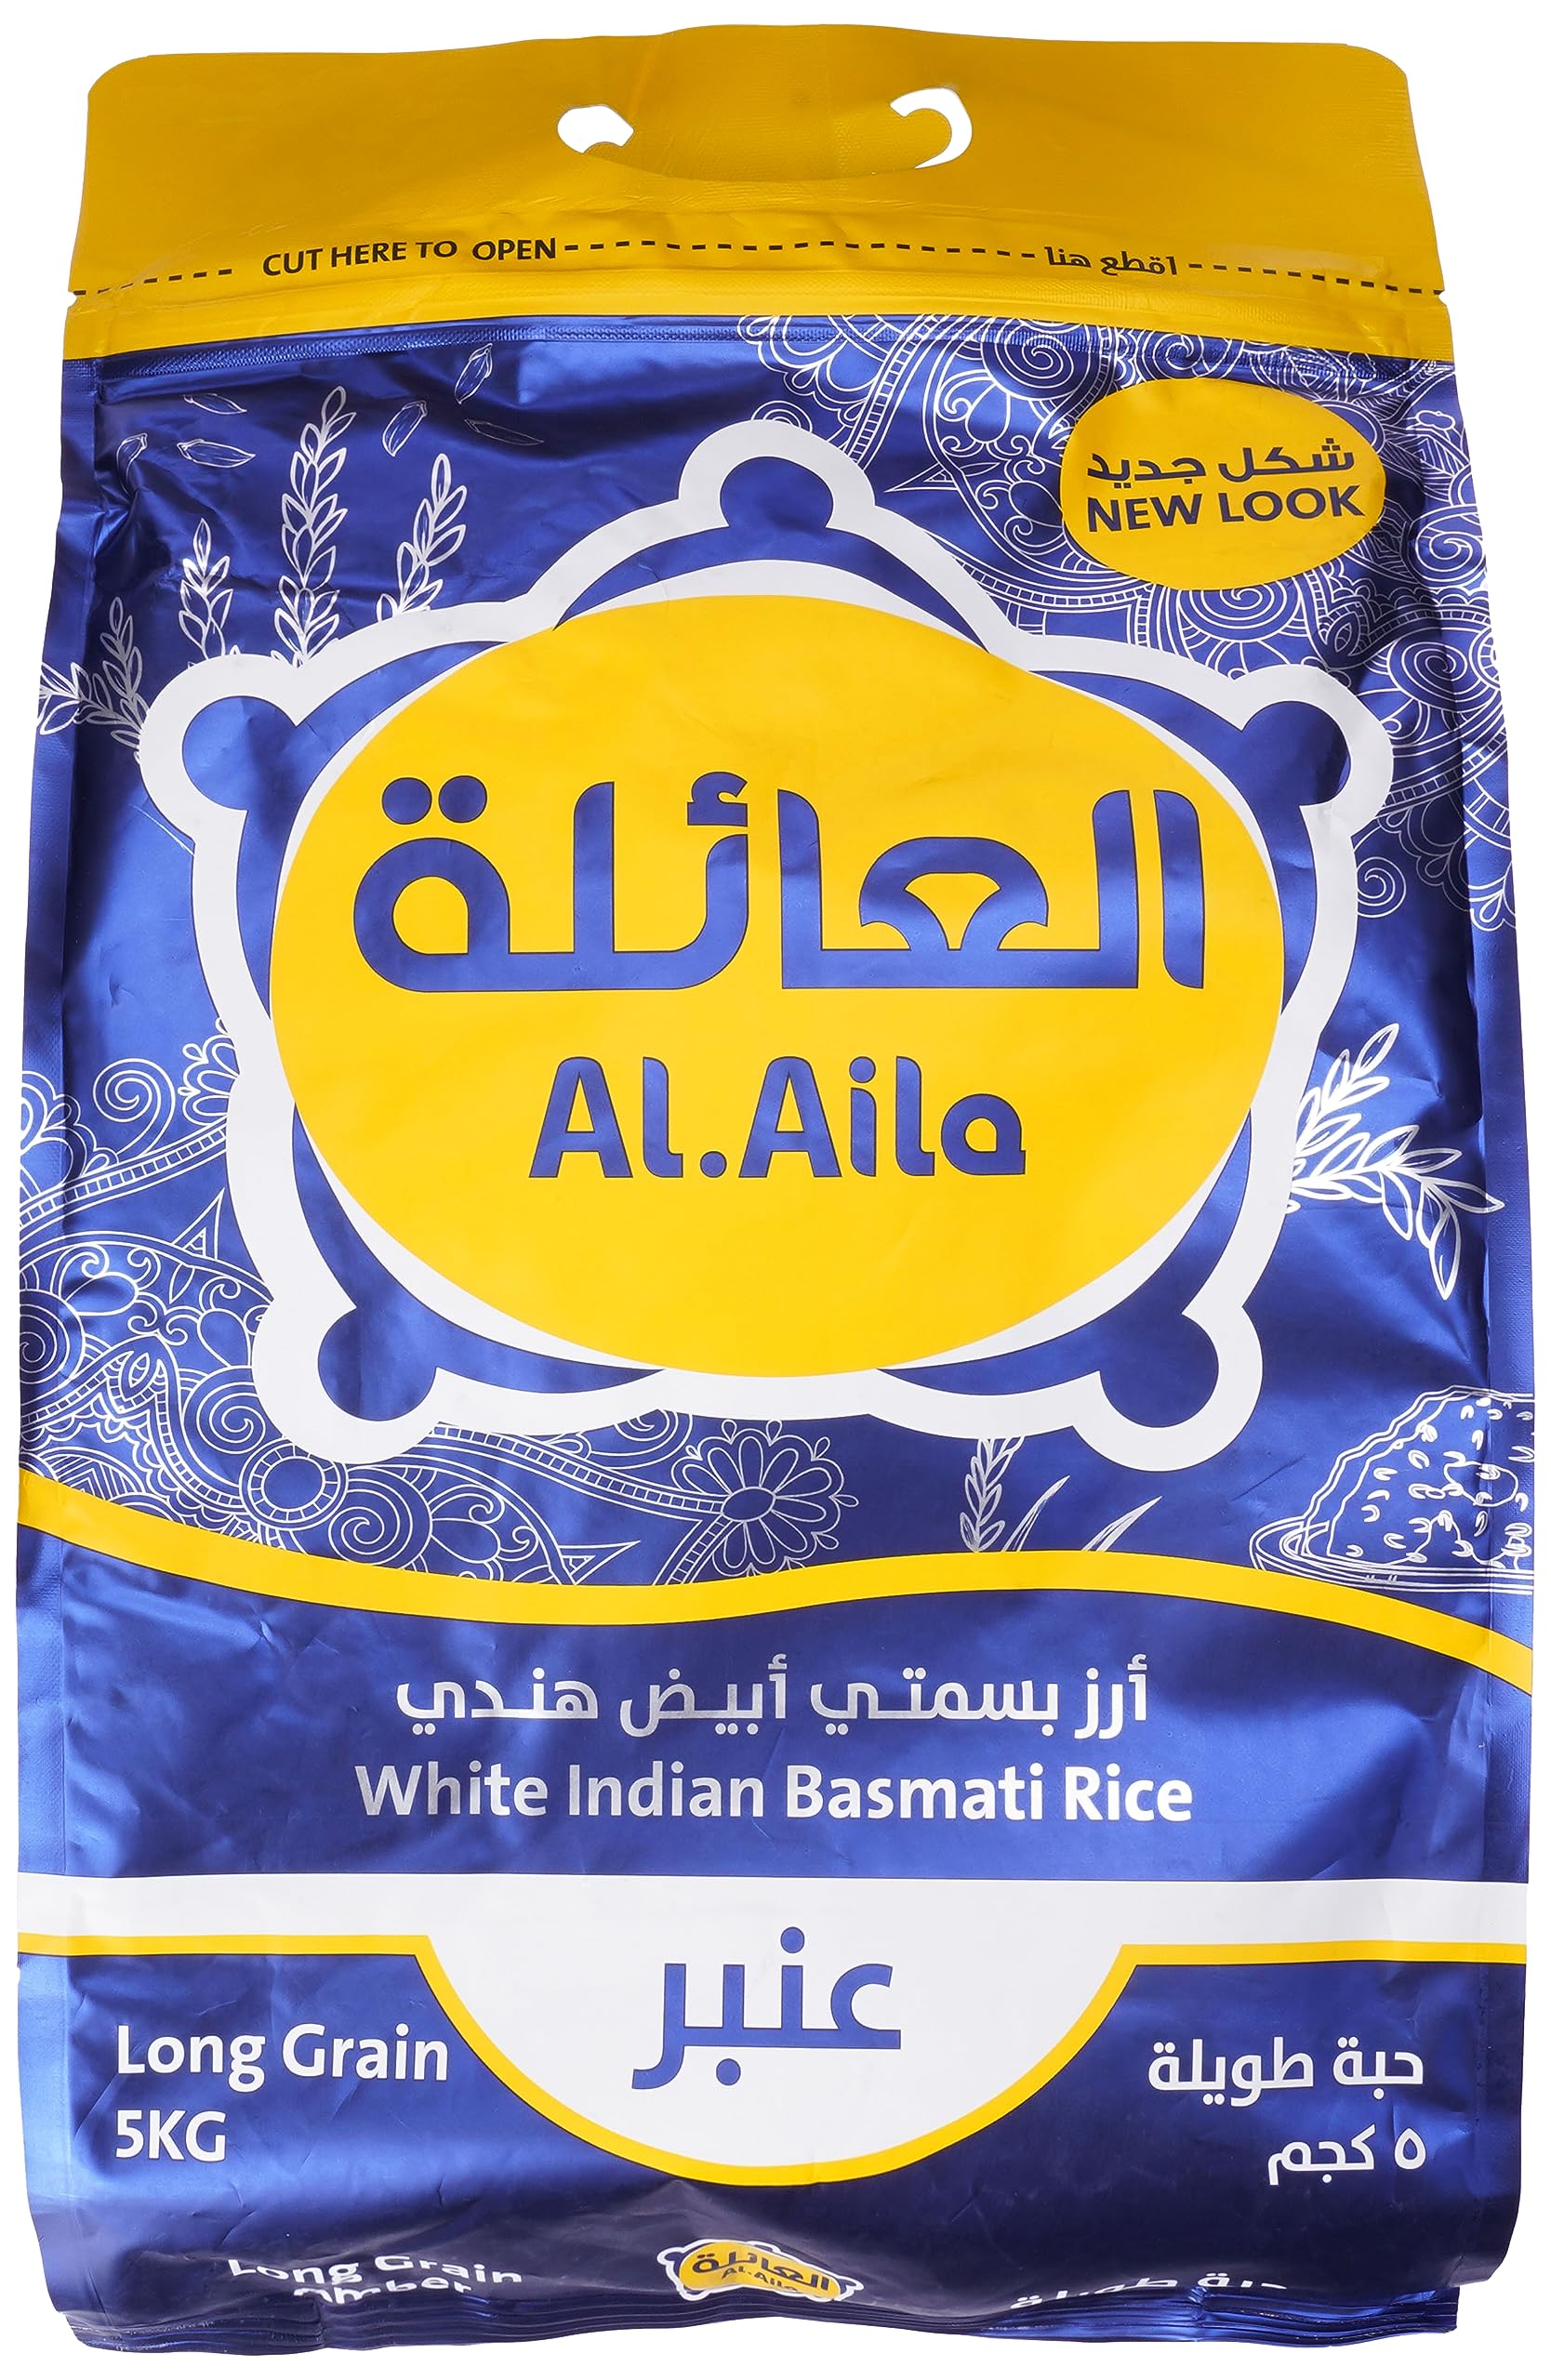 Alaila Long Grain Indian Basmati Rice, 5Kg - Pack Of 1